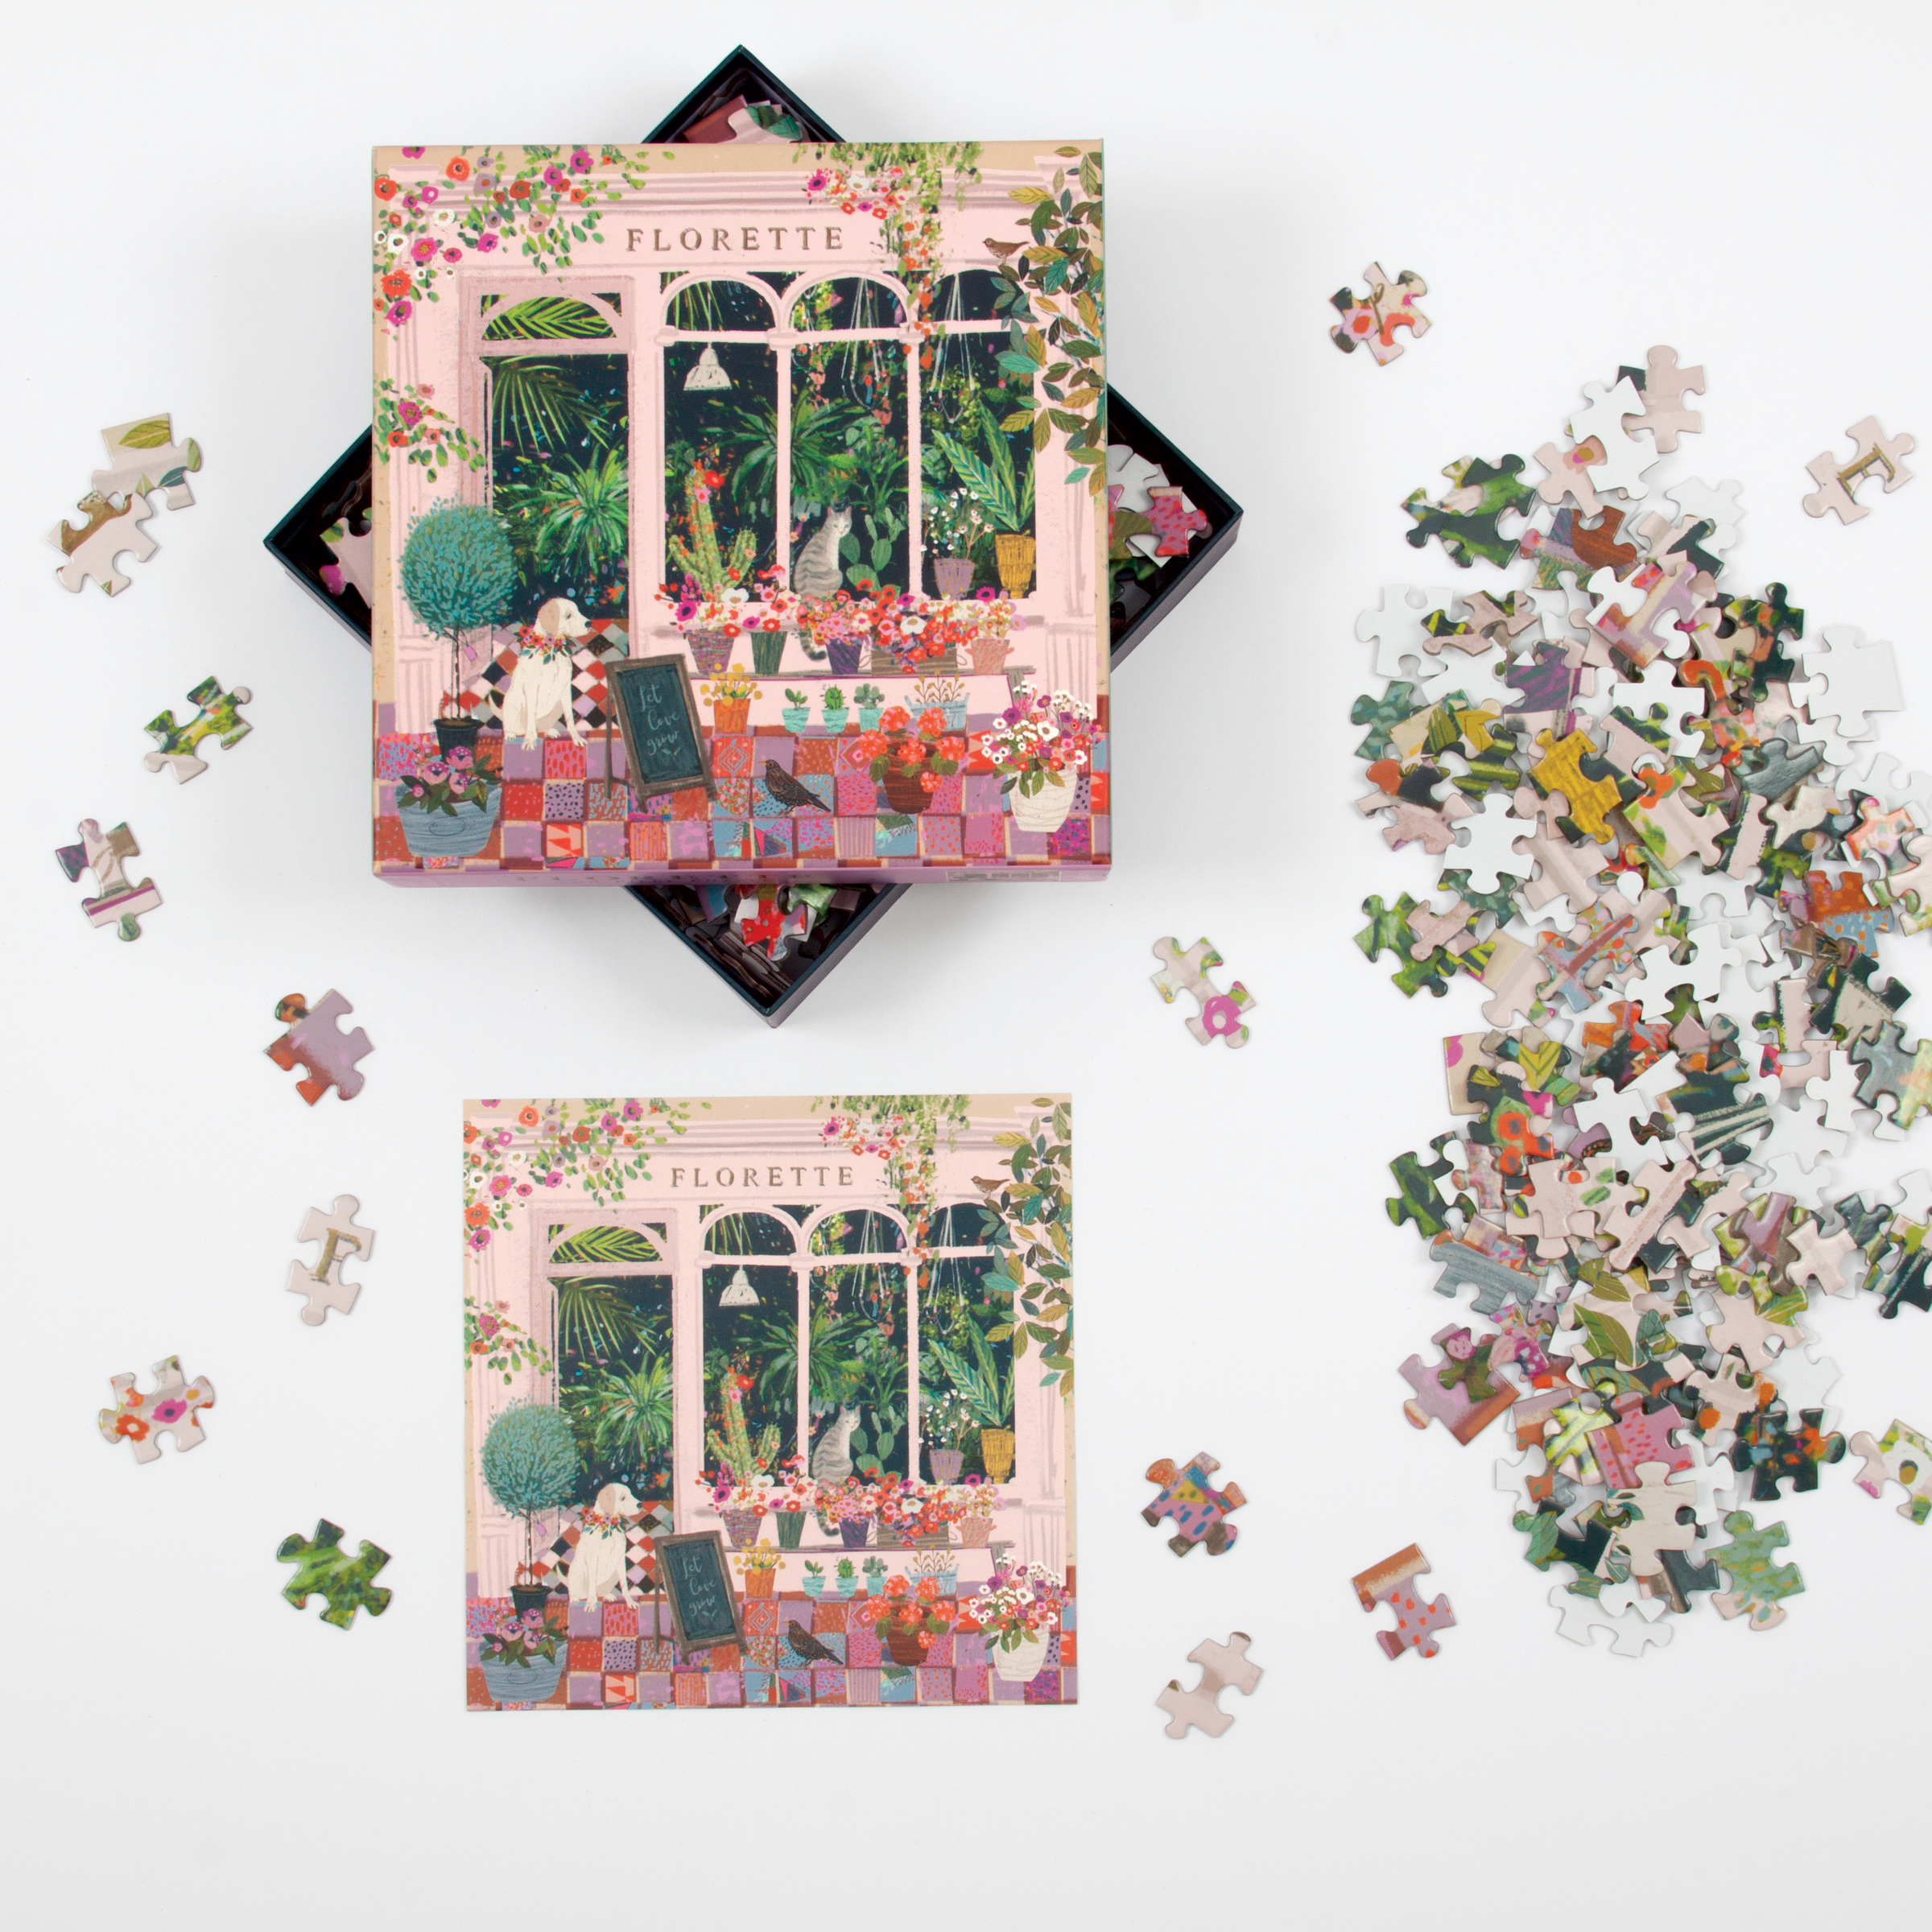 Galison | Florette 500 piece puzzle Gallison - Oscar & Libby's